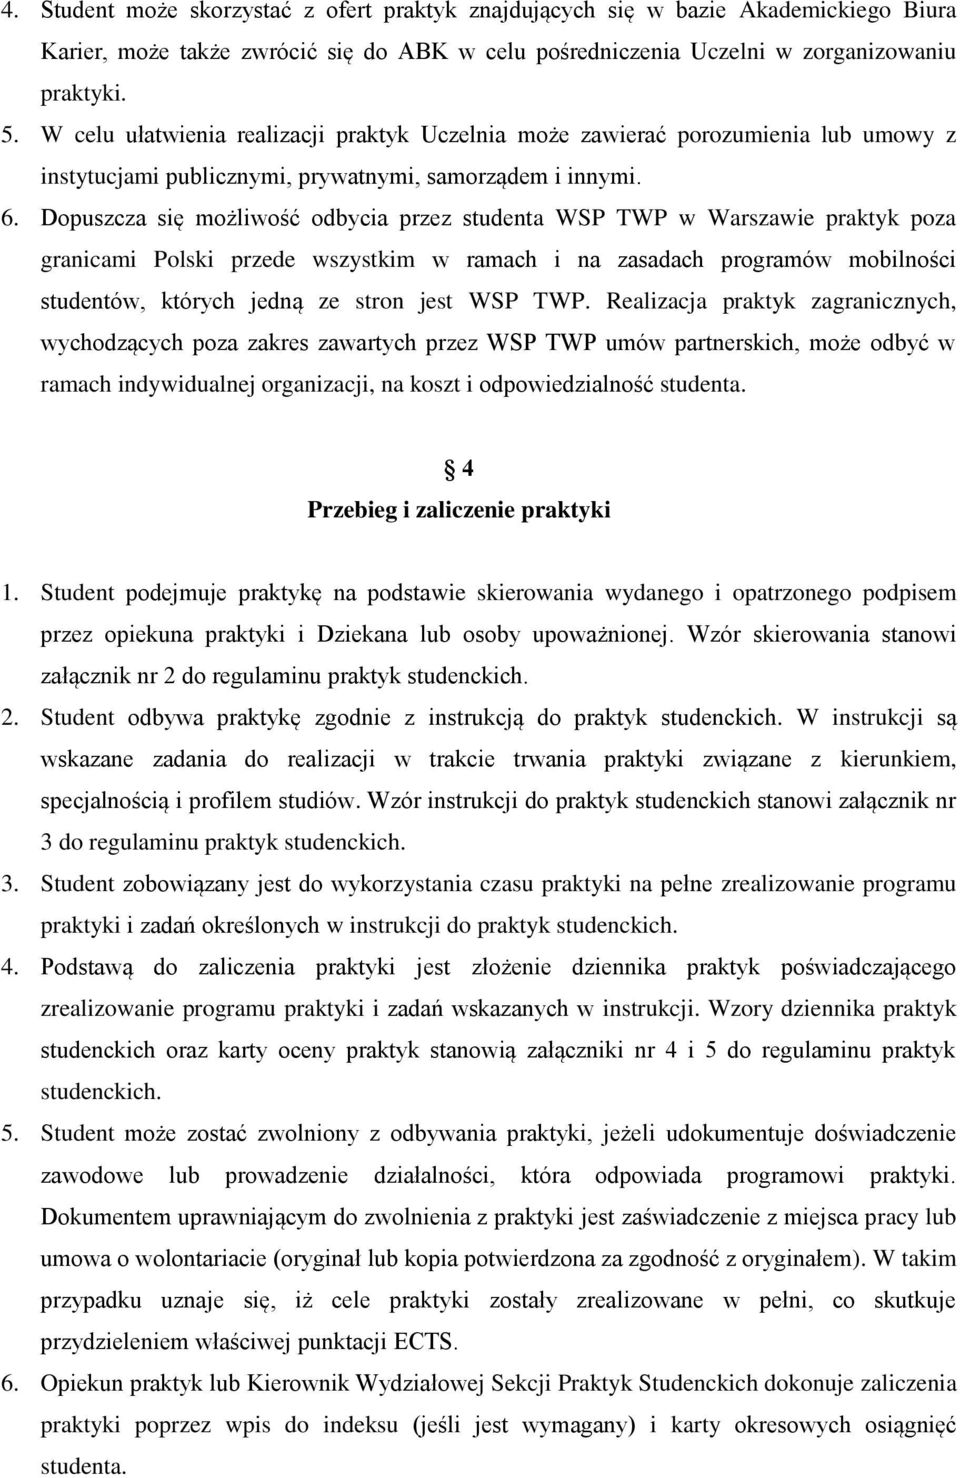 Dopuszcza się możliwość odbycia przez studenta WSP TWP w Warszawie praktyk poza granicami Polski przede wszystkim w ramach i na zasadach programów mobilności studentów, których jedną ze stron jest